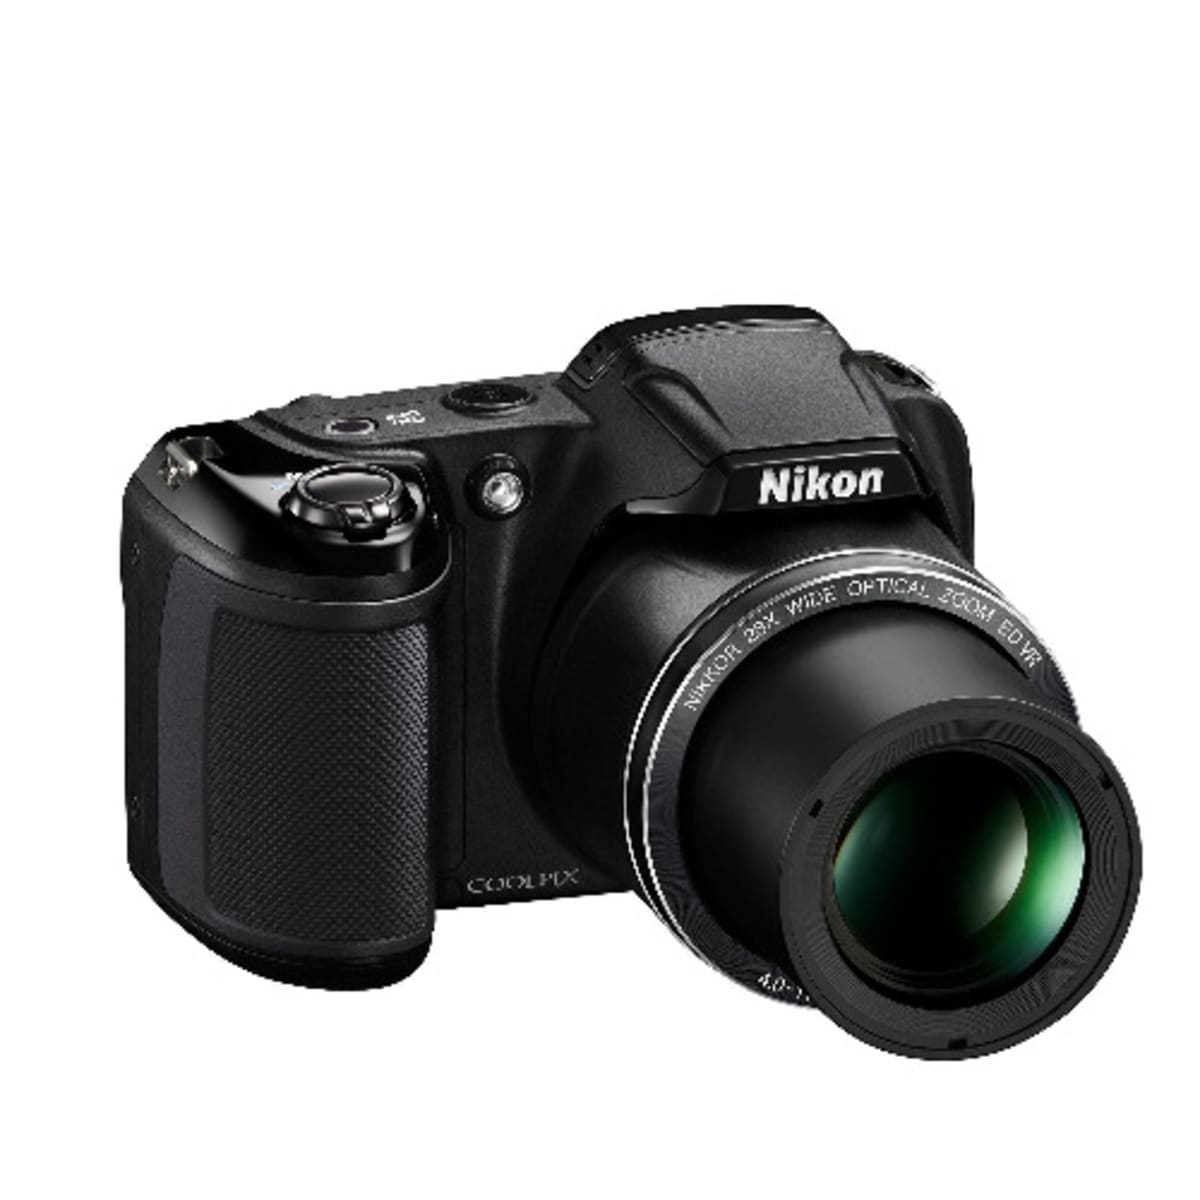 Nikon Coolpix L340 | Konga Online Shopping